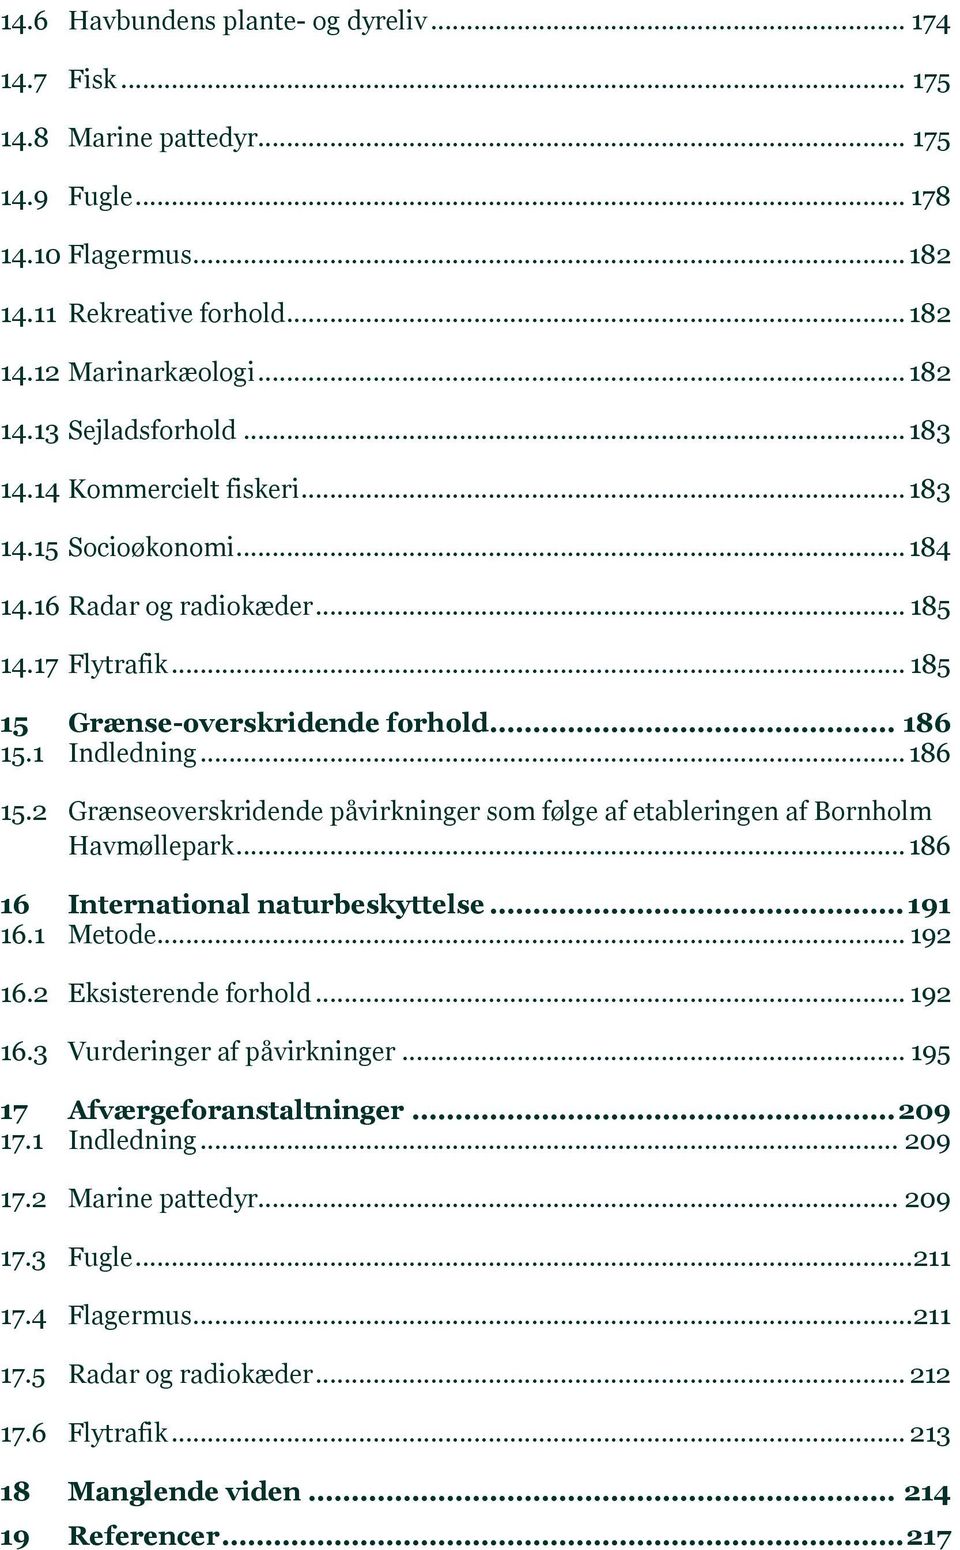 1 Indledning... 186 15.2 Grænseoverskridende påvirkninger som følge af etableringen af Bornholm Havmøllepark... 186 16 International naturbeskyttelse... 191 16.1 Metode... 192 16.